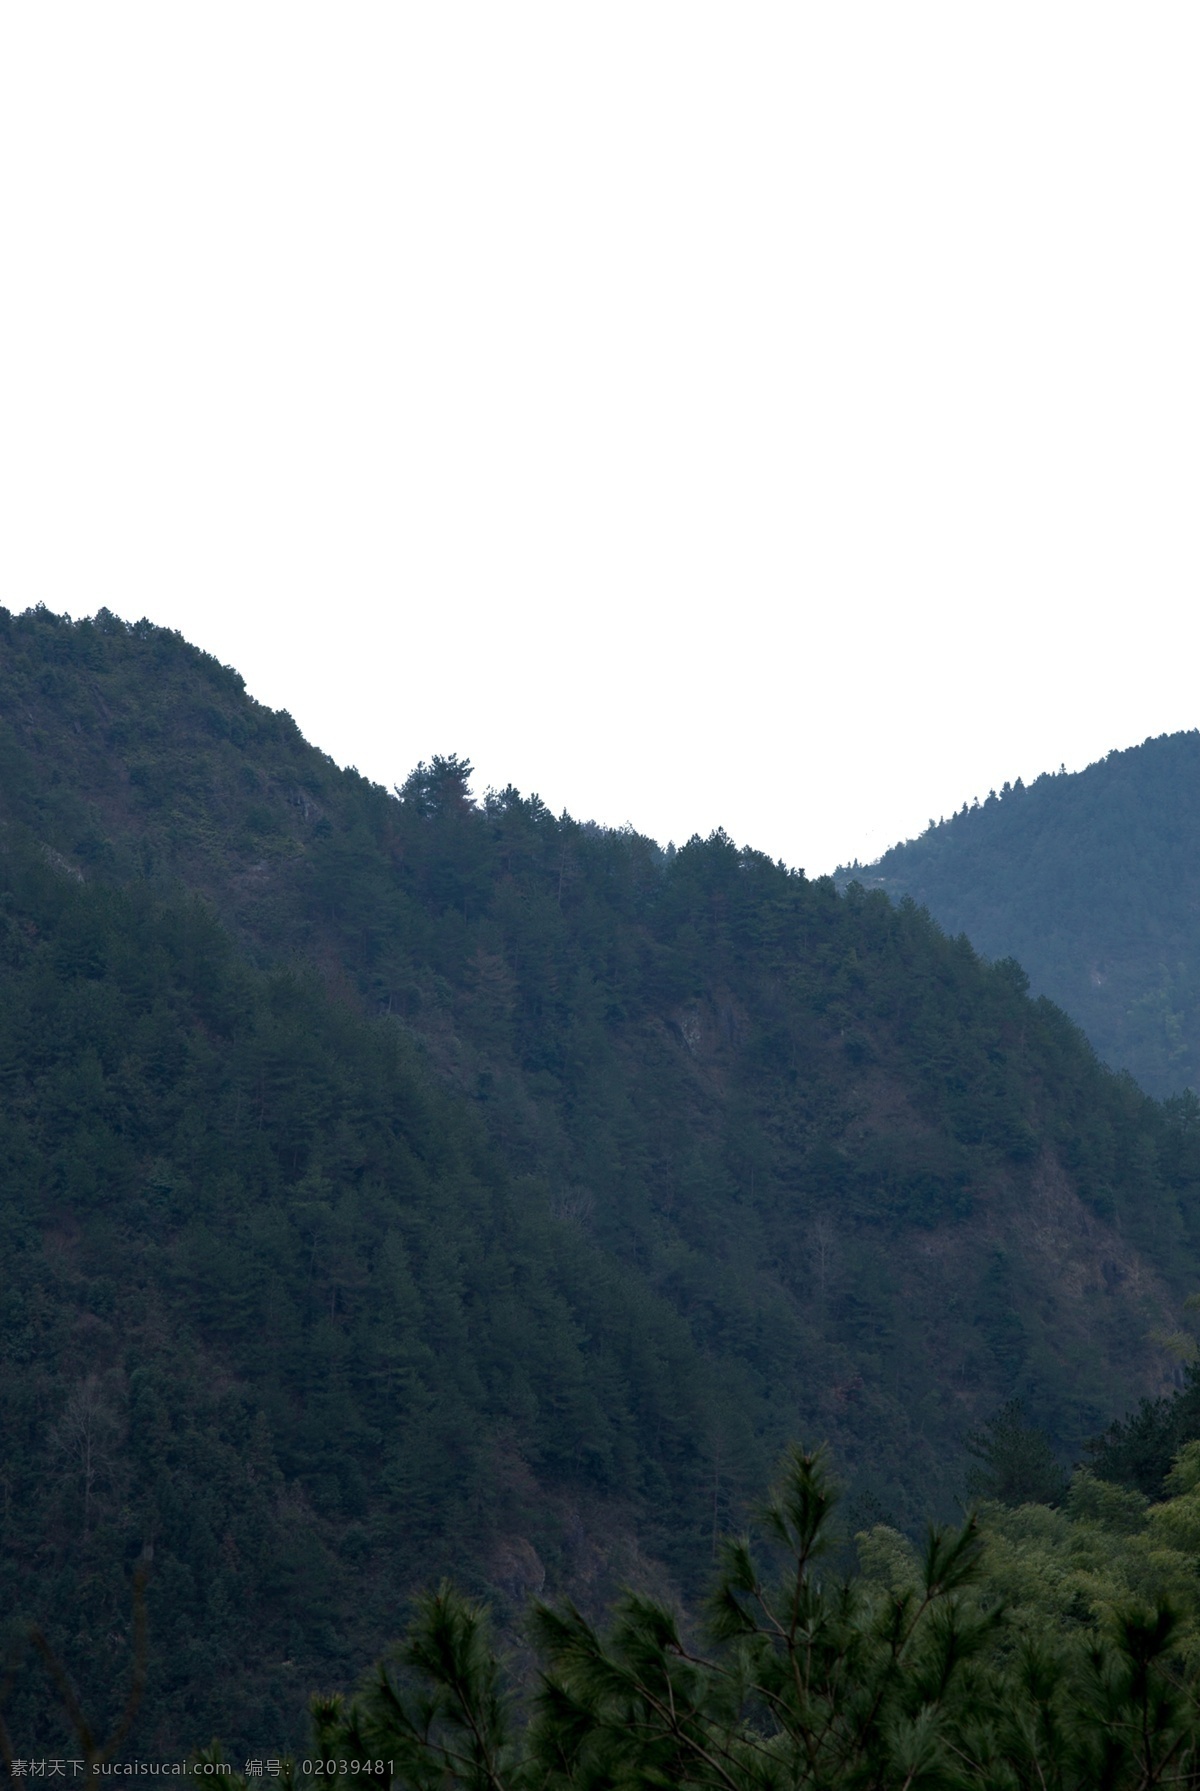 绵延 起伏 险峻 山峰 大山 群山连绵 山岩 山谷 峭壁 彩色岩石 森林 绿树 黄花 自然风光 山水风景 自然景观